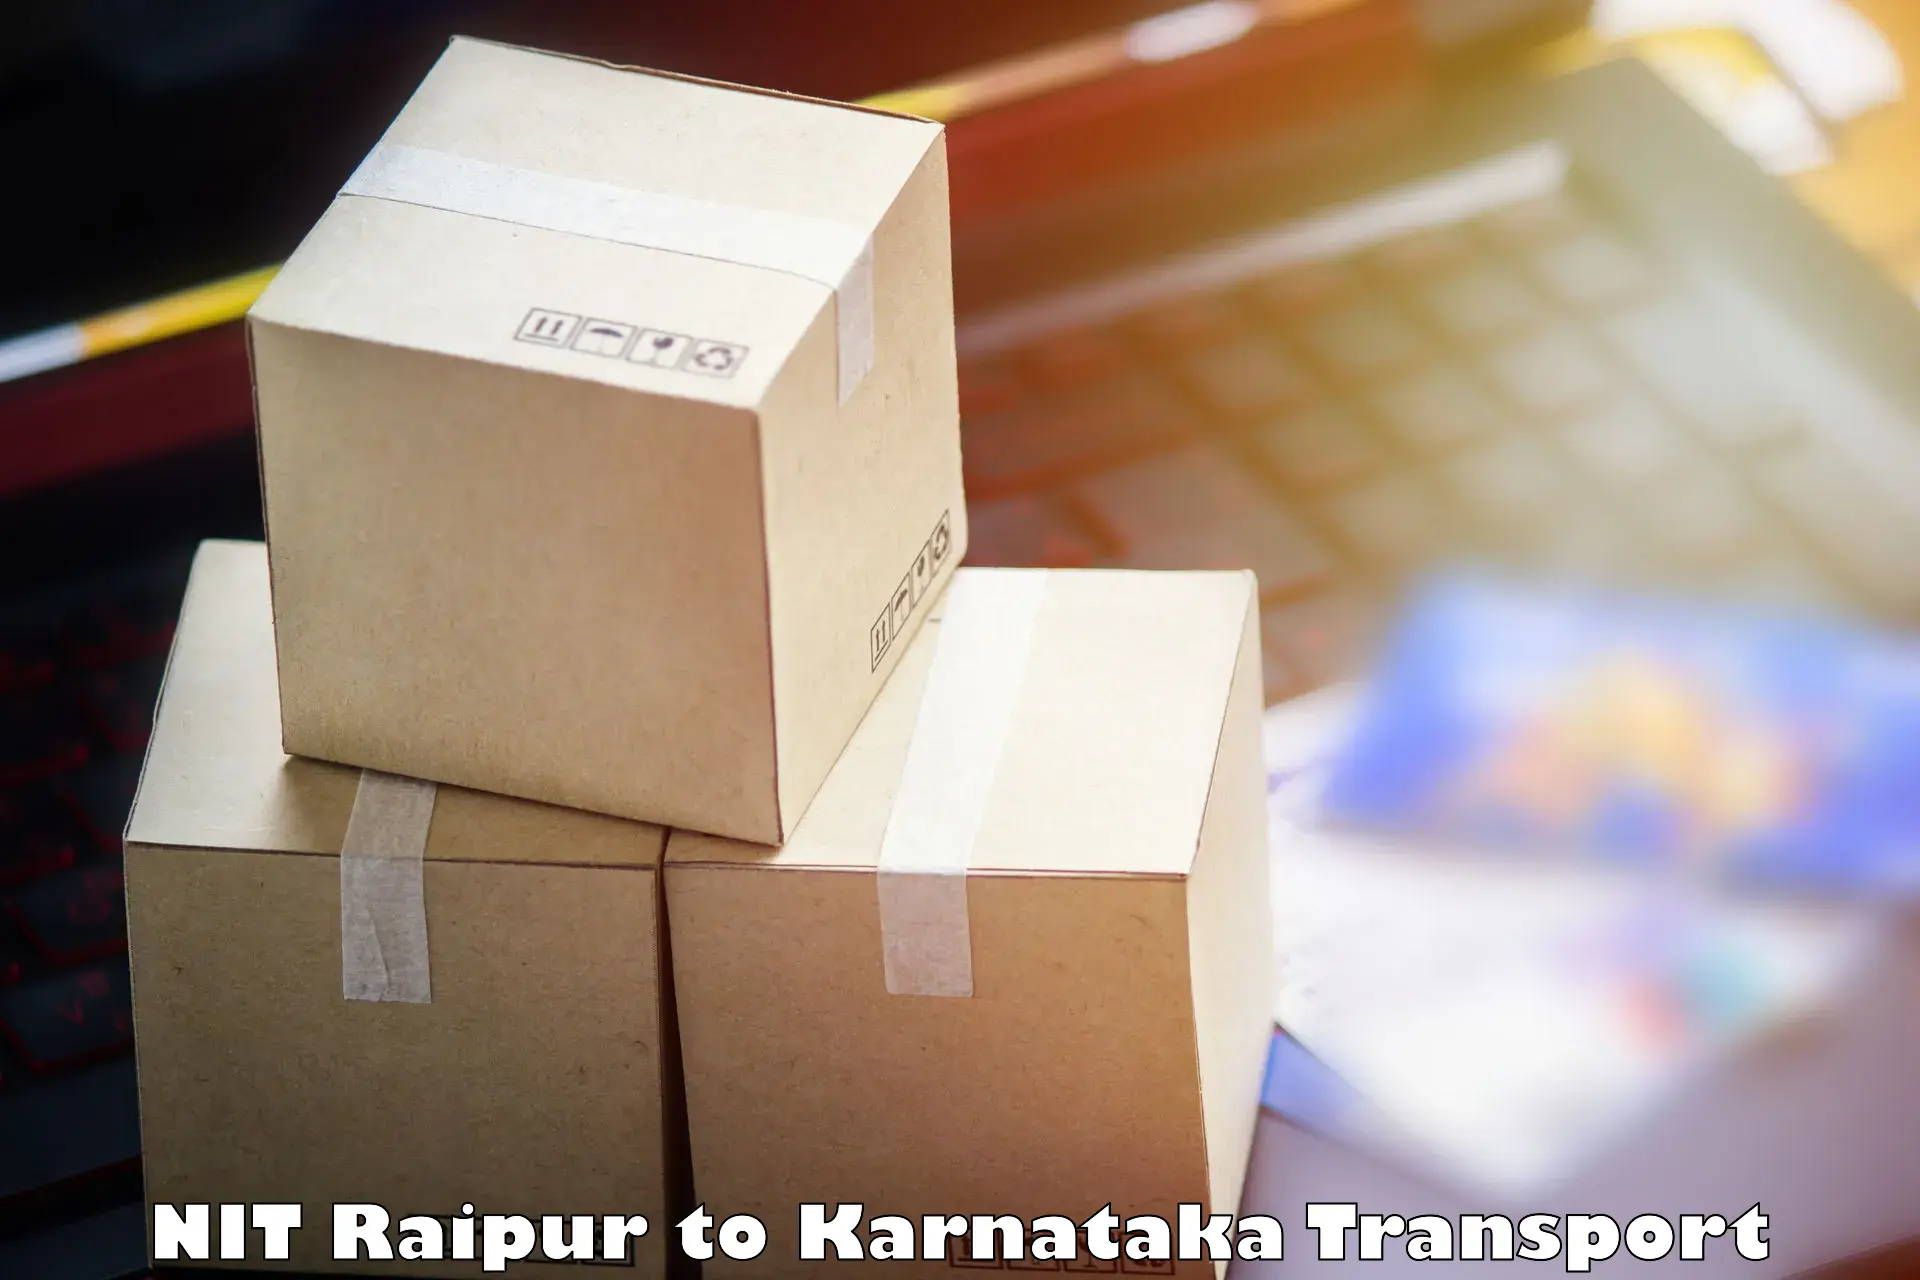 Parcel transport services NIT Raipur to Harugeri